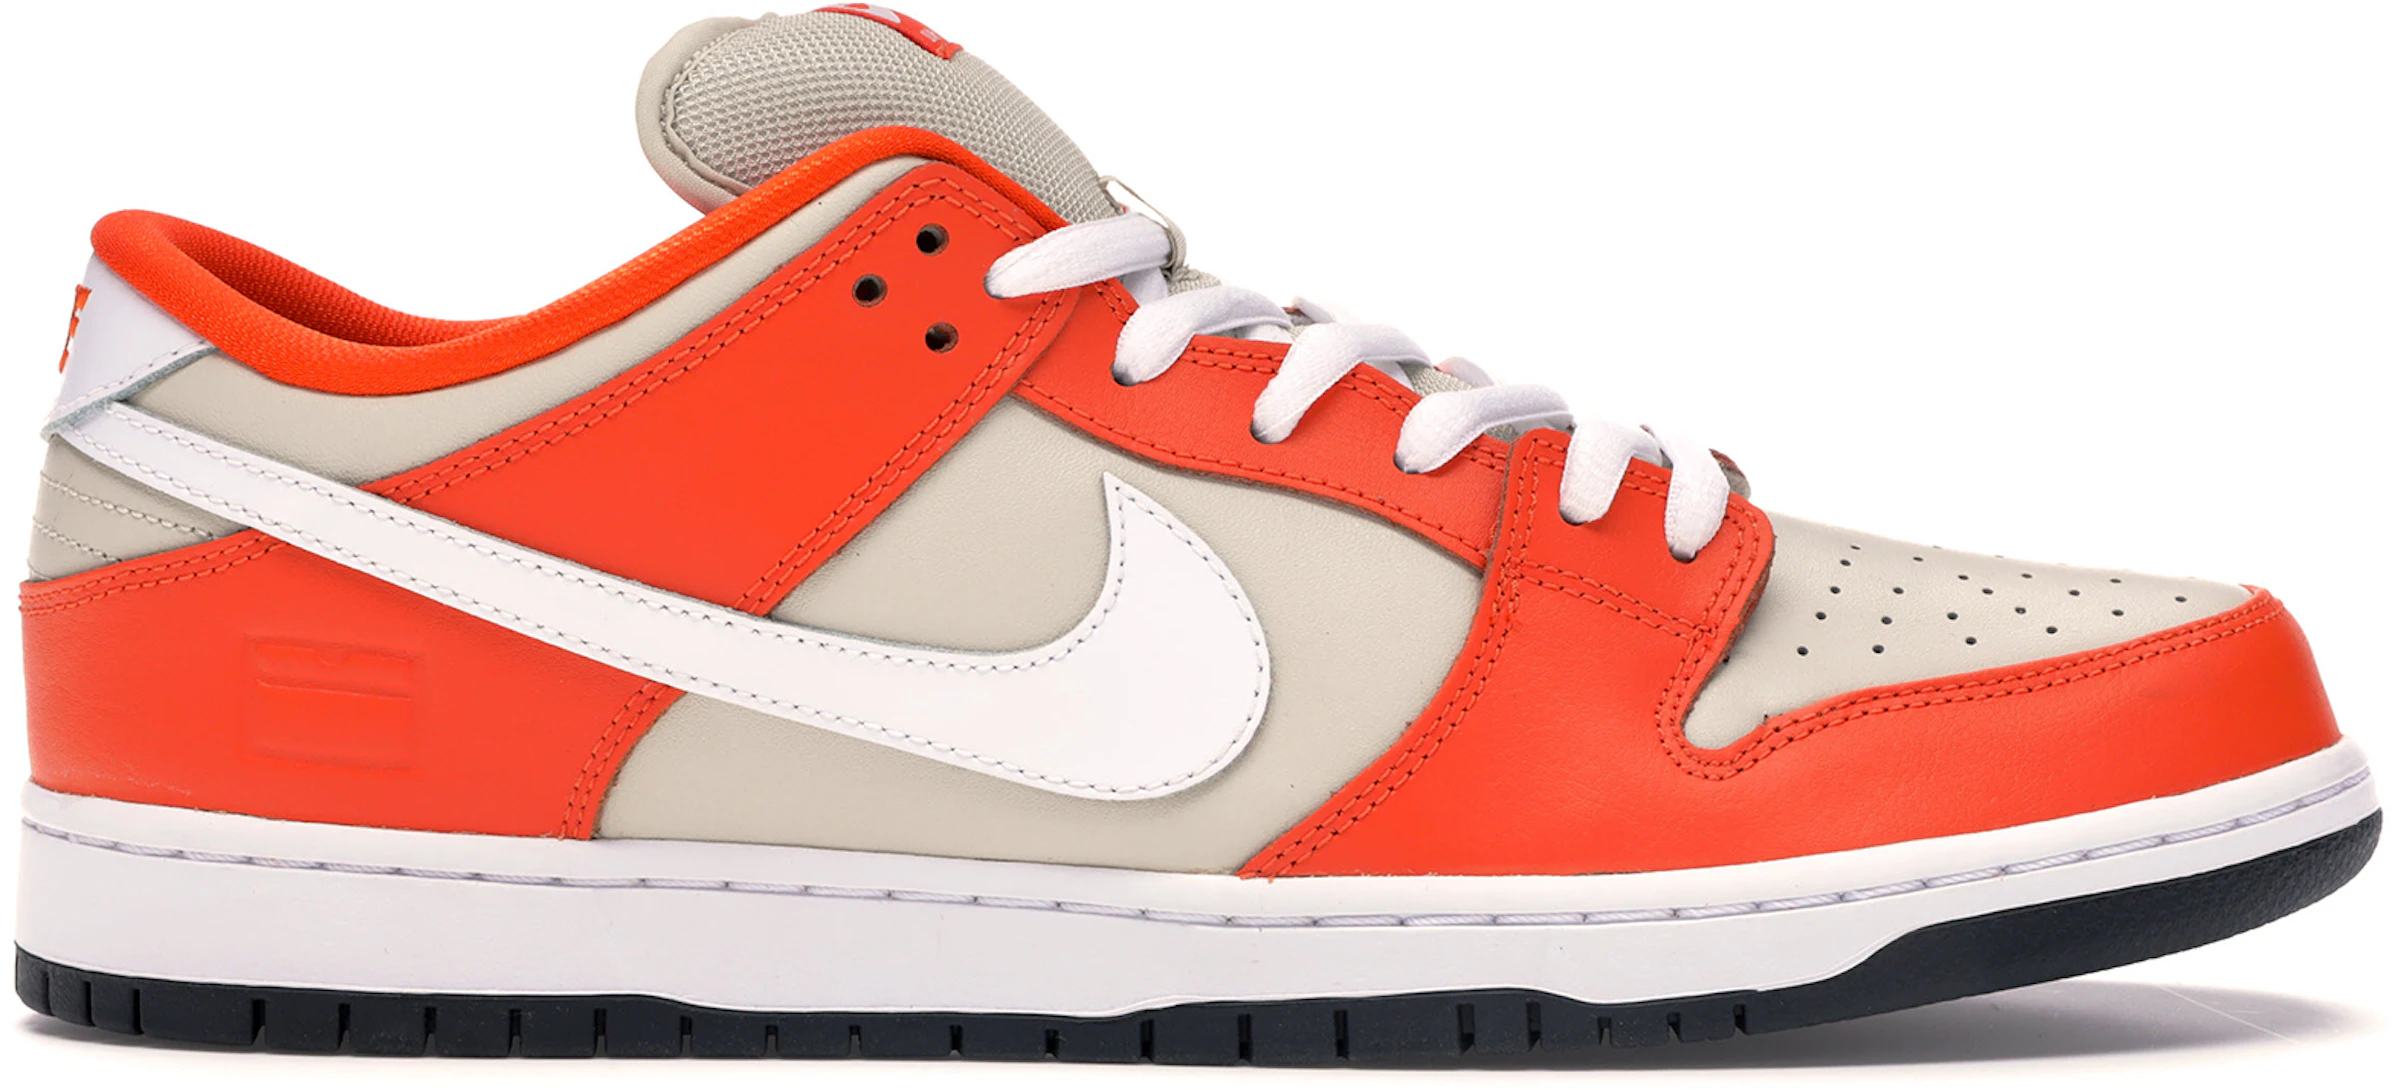 Nike Low Orange Box 313170-811 -